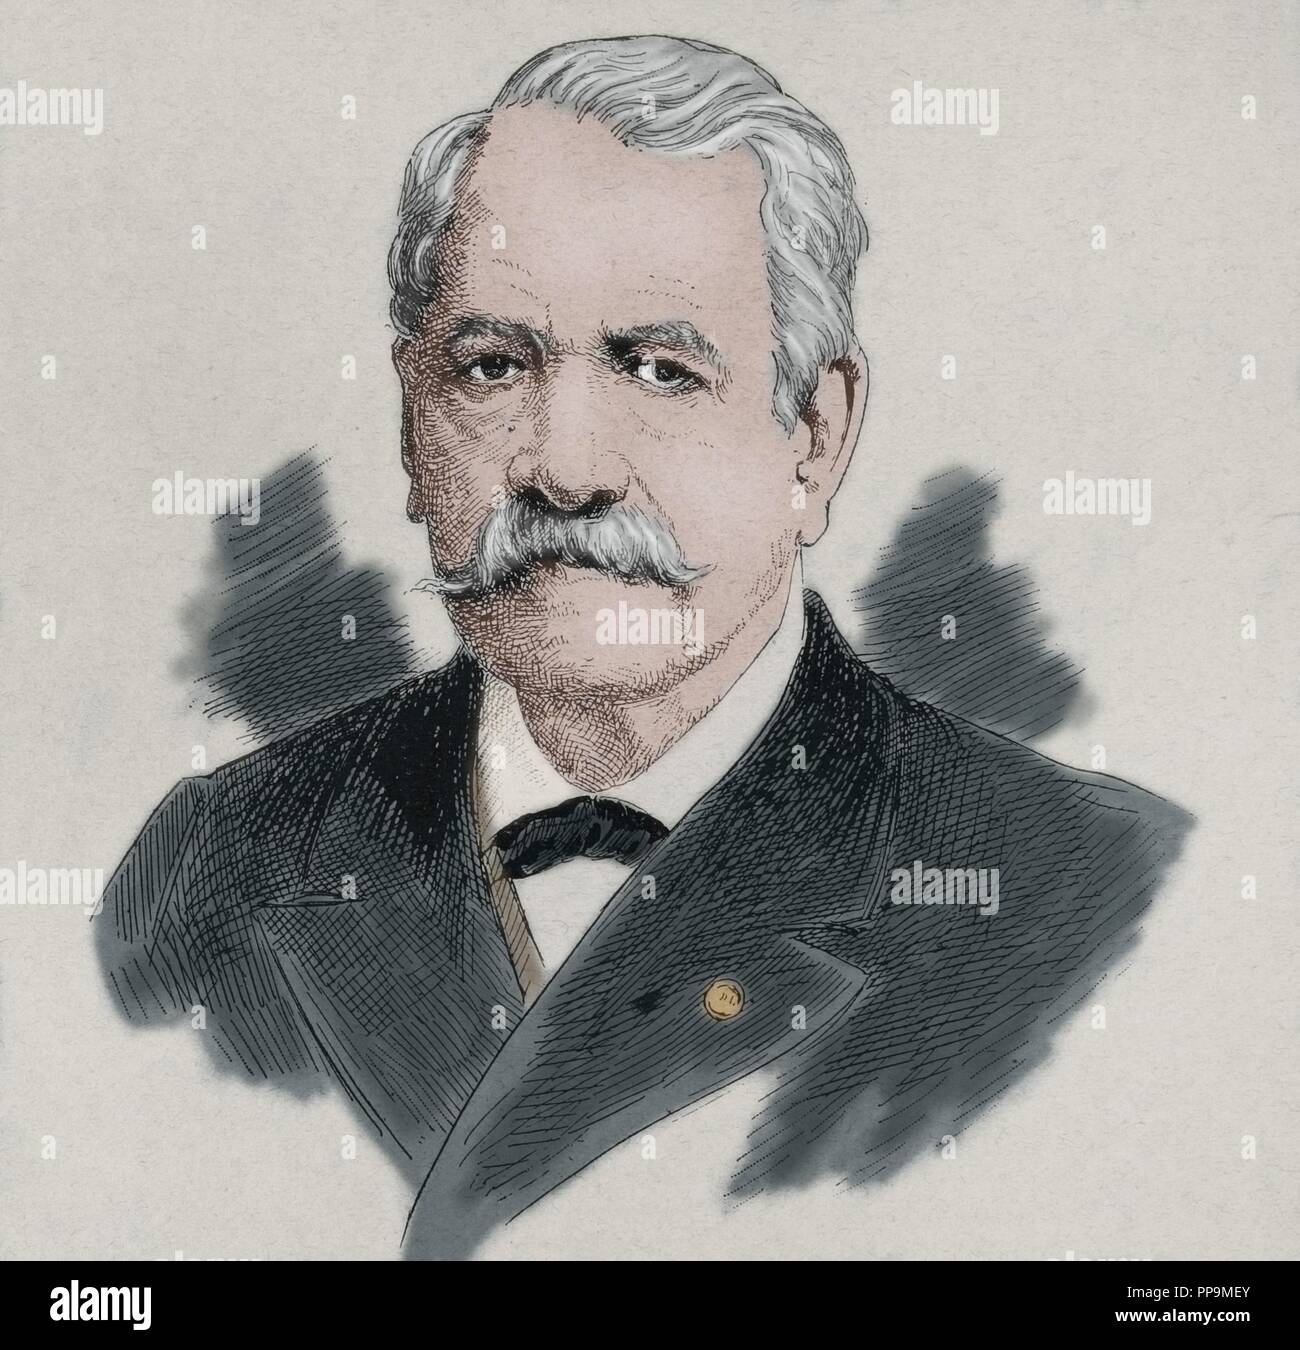 Ferdinand De Lesseps (1805-1894). Französischer Diplomat und Unternehmer. Gravur in der iberischen Abbildung, 1894. Farbige. Stockfoto